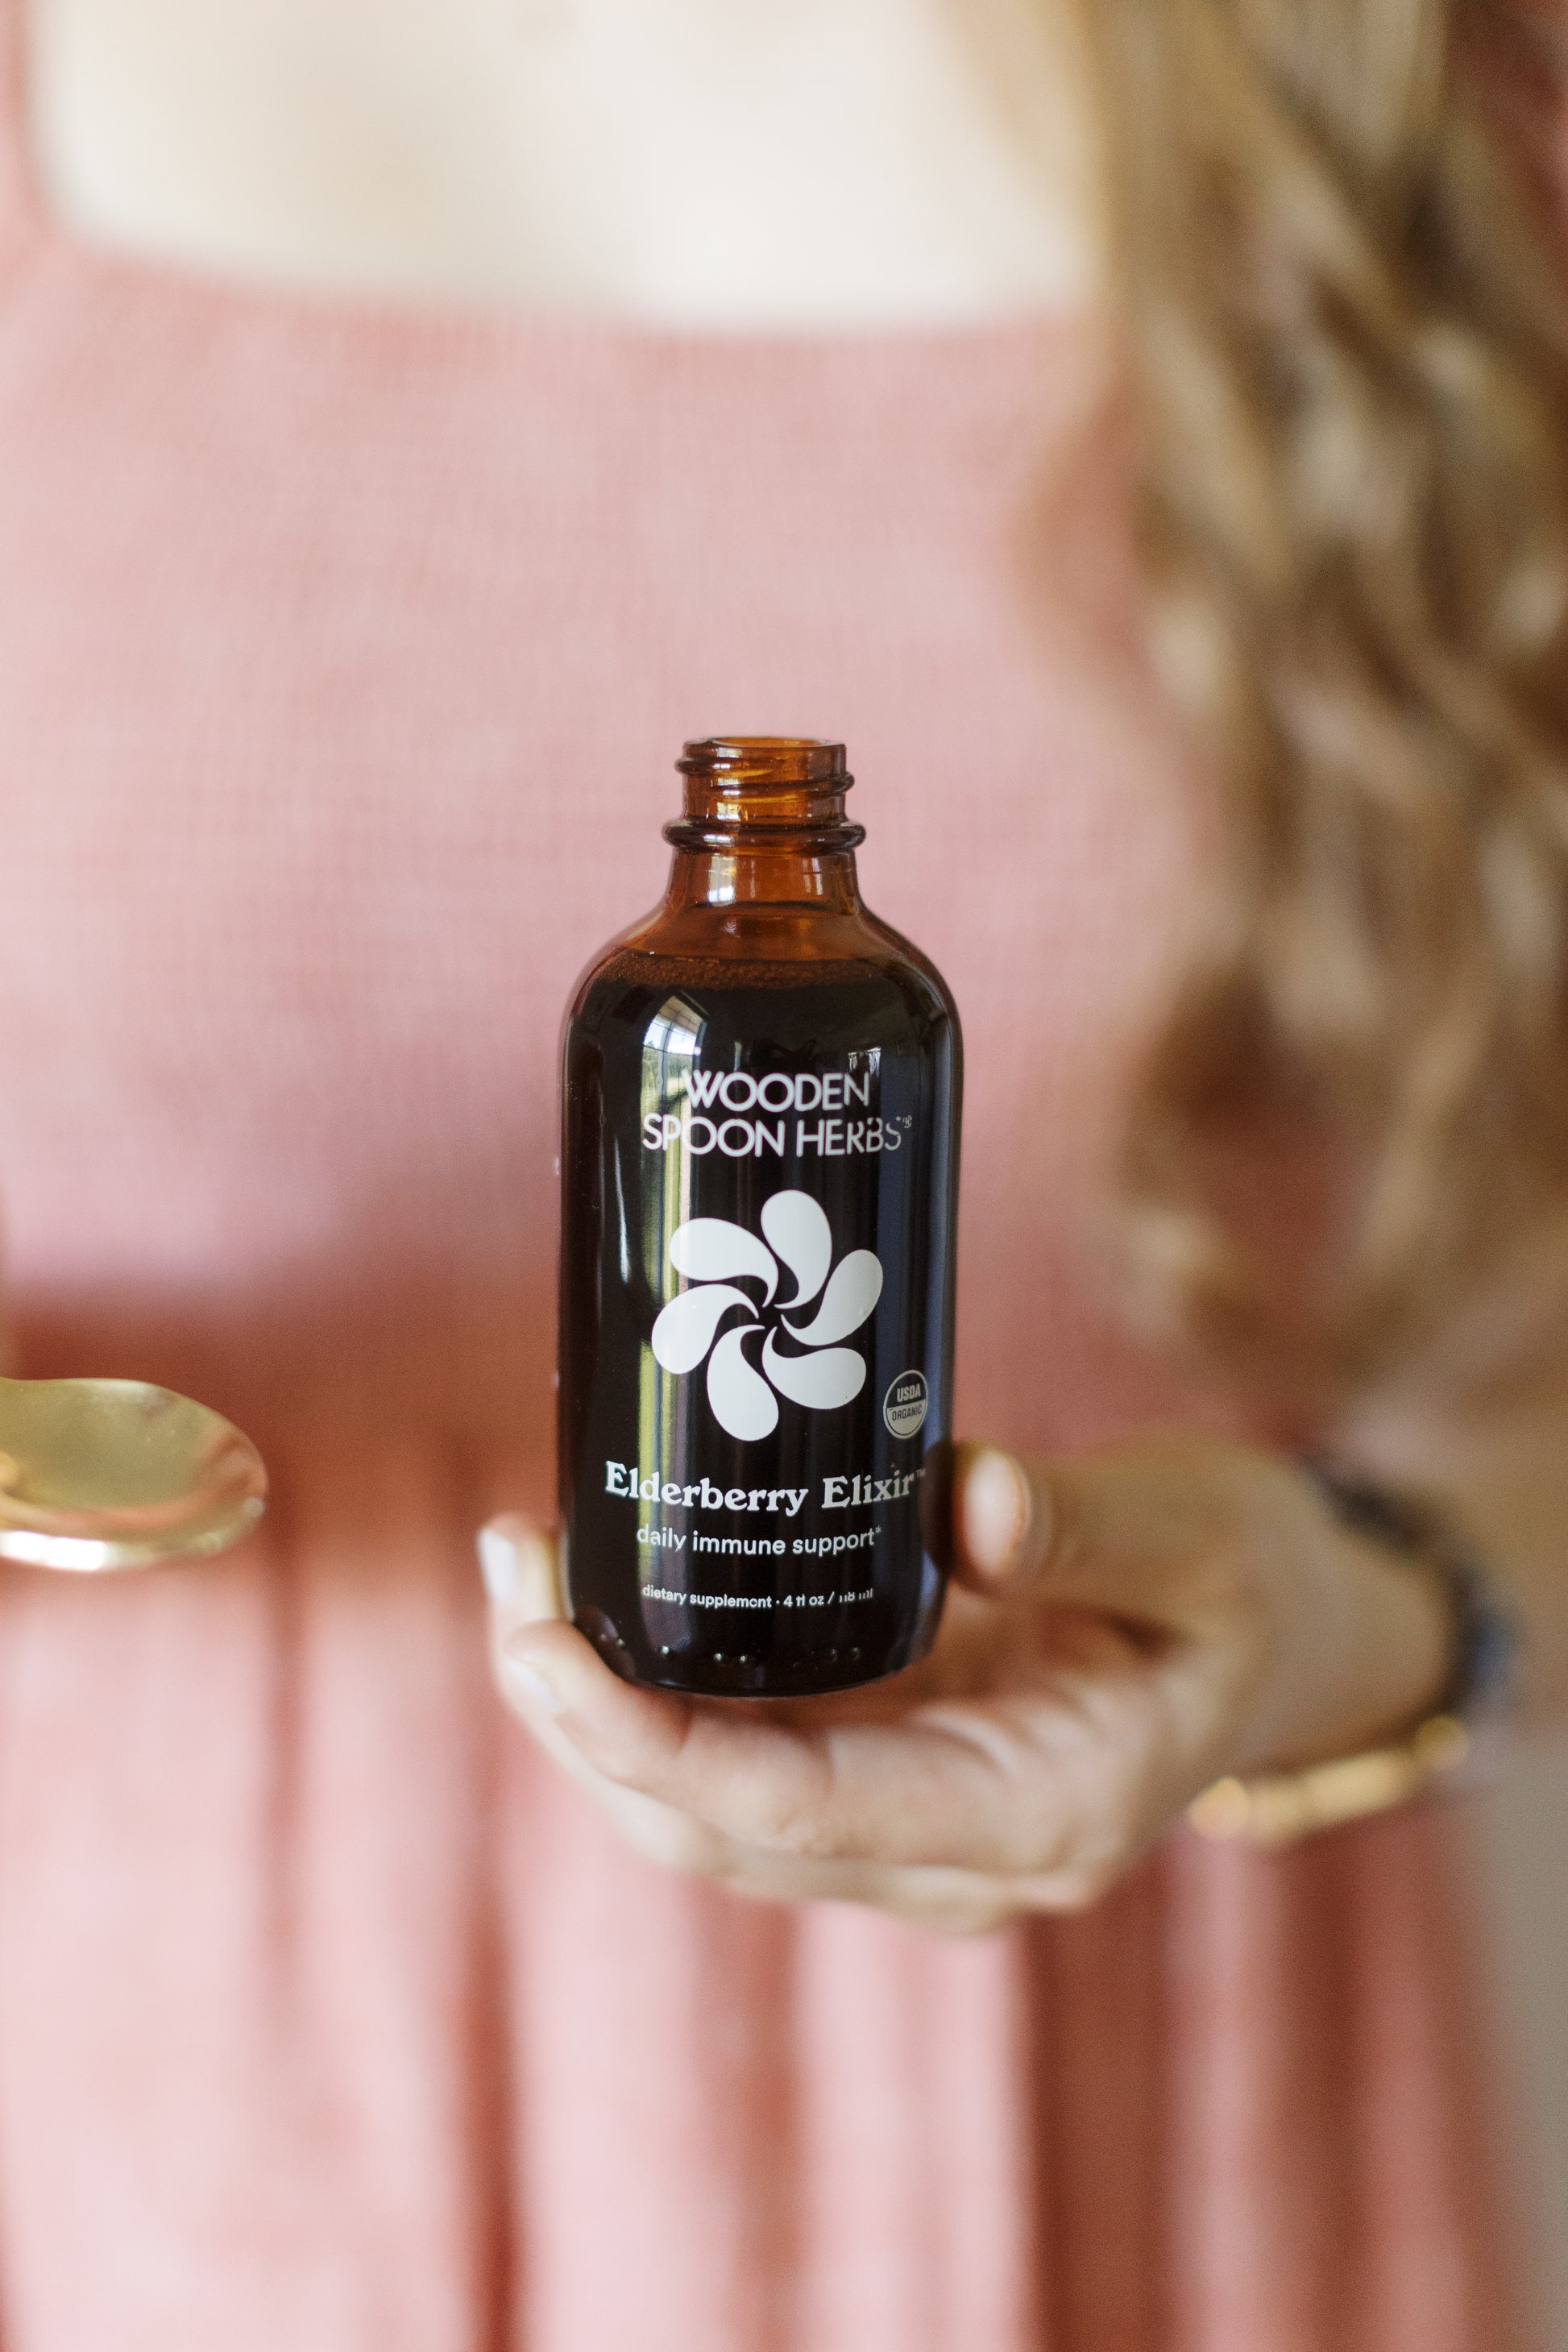 A bottle of Wooden Spoon Herbs' Elderberry Elixir